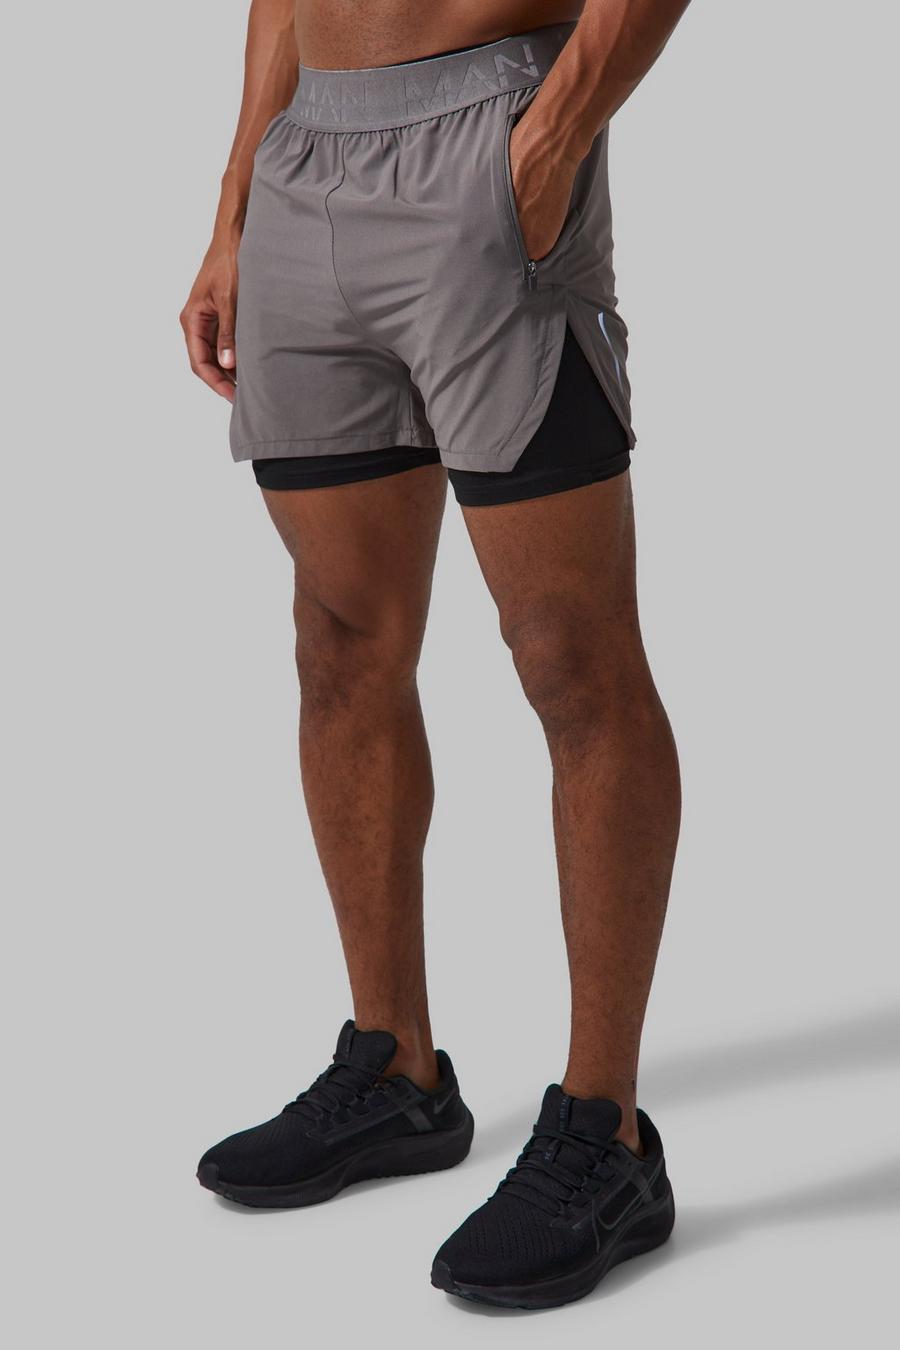 Pantalón corto MAN Active 2 en 1 con abertura extrema, Charcoal grigio